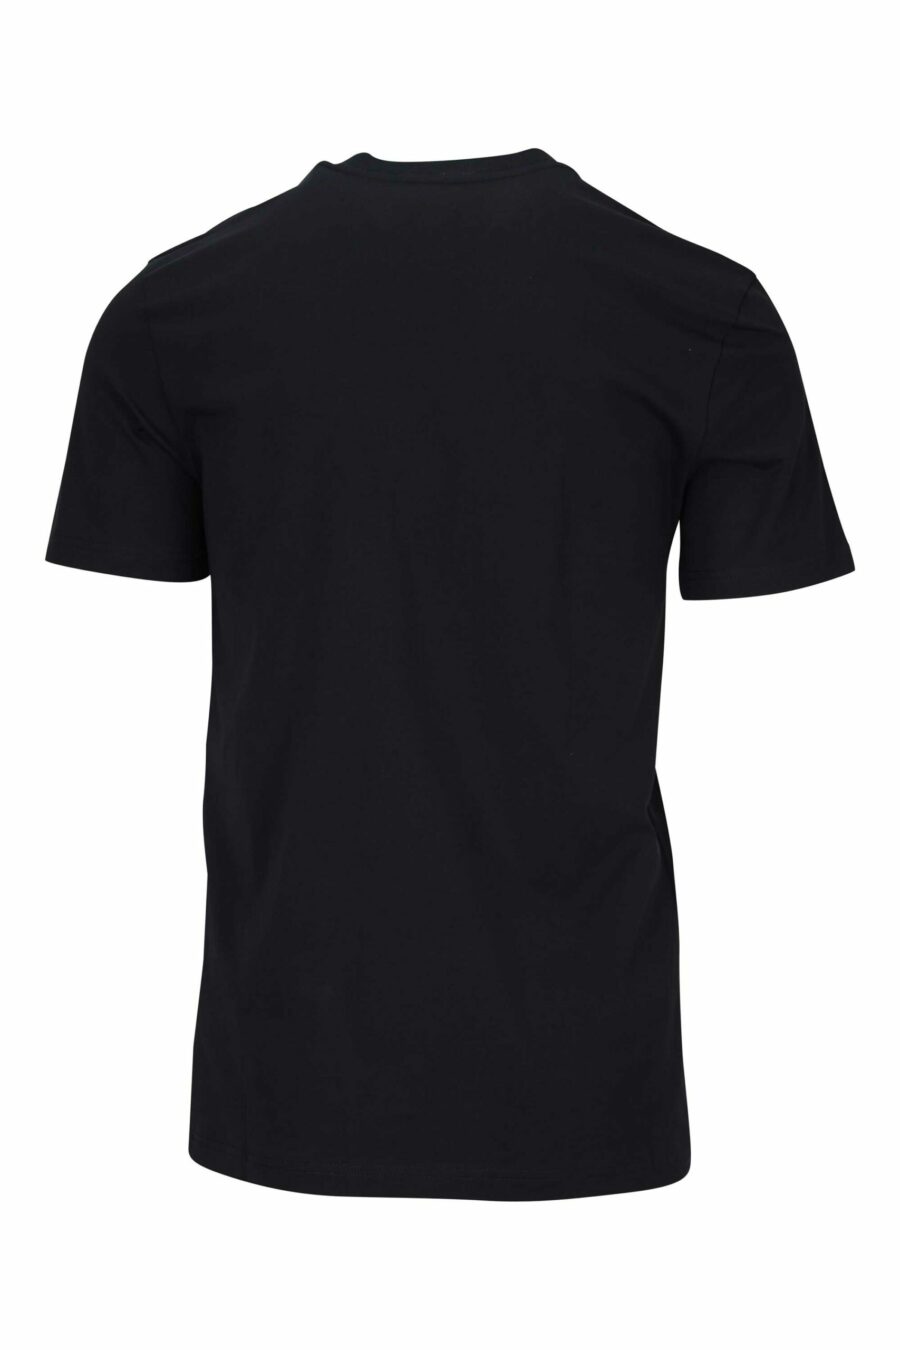 T-shirt noir avec minilogue "teddy" brodé - 667113455549 1 à l'échelle